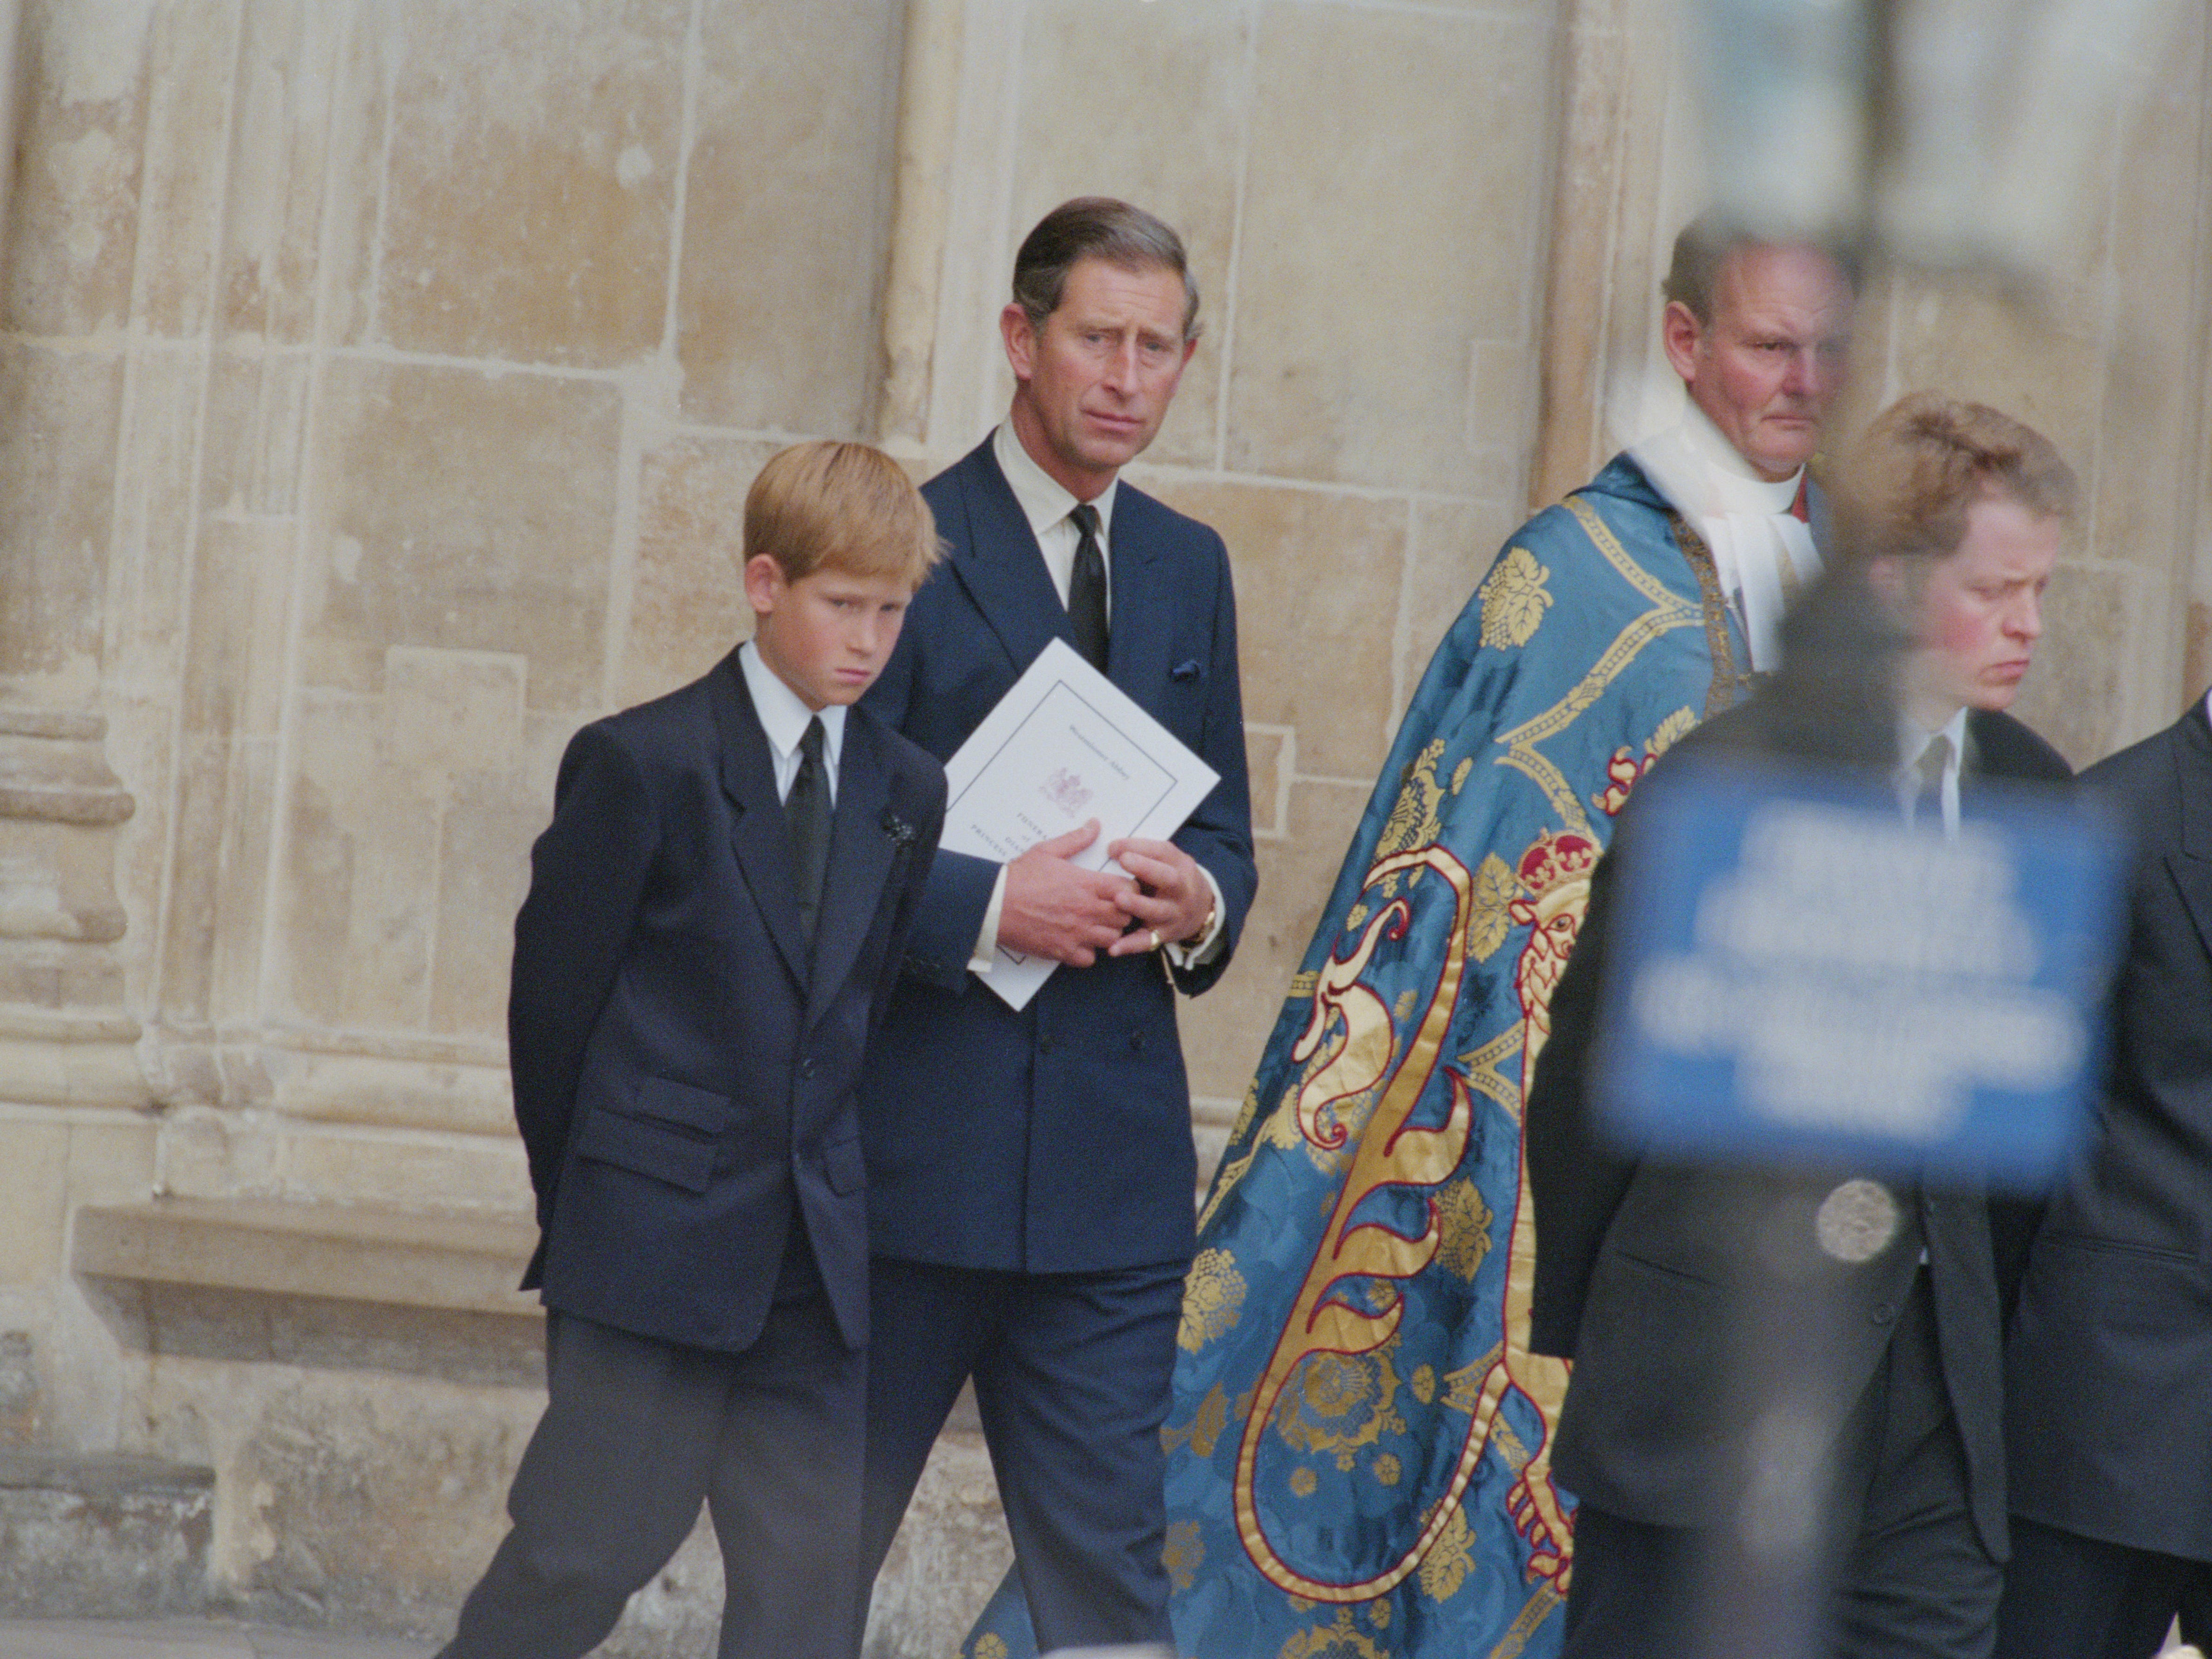 König Charles und Prinz Harry in der Westminster Abbey zur Trauerfeier für Diana, Prinzessin von Wales, 6. September 1997.